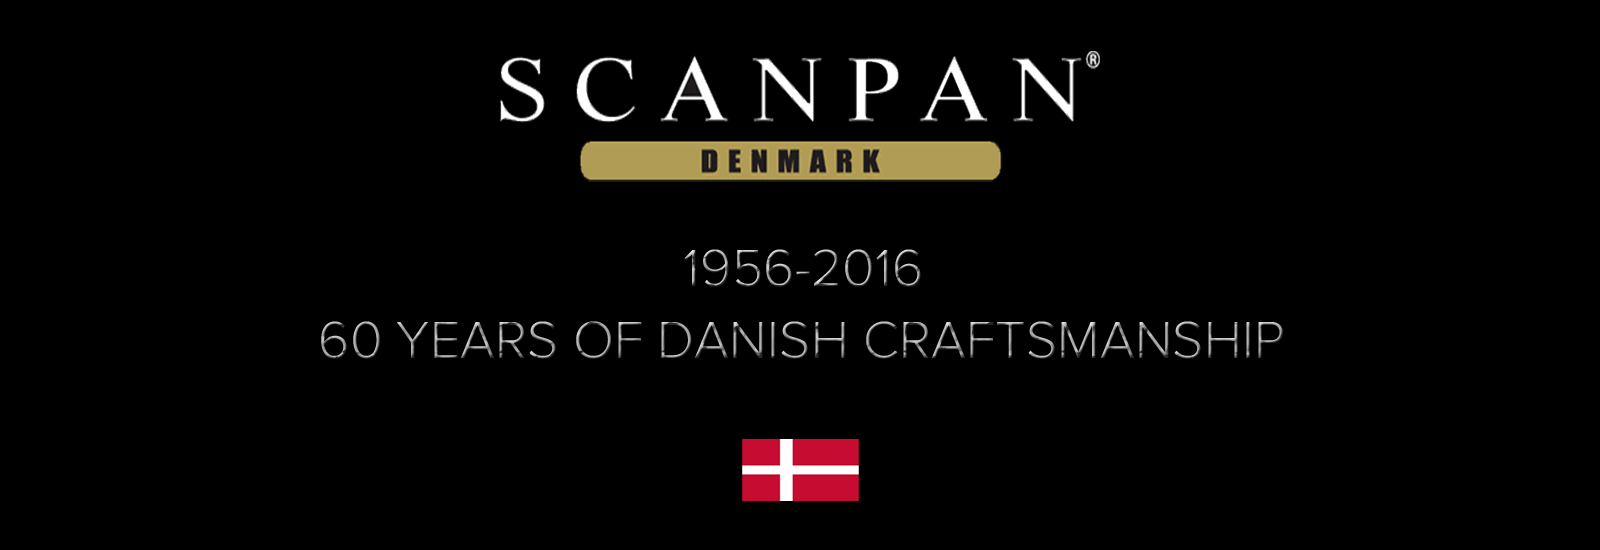 Scanpan 60 years of Craftmanship